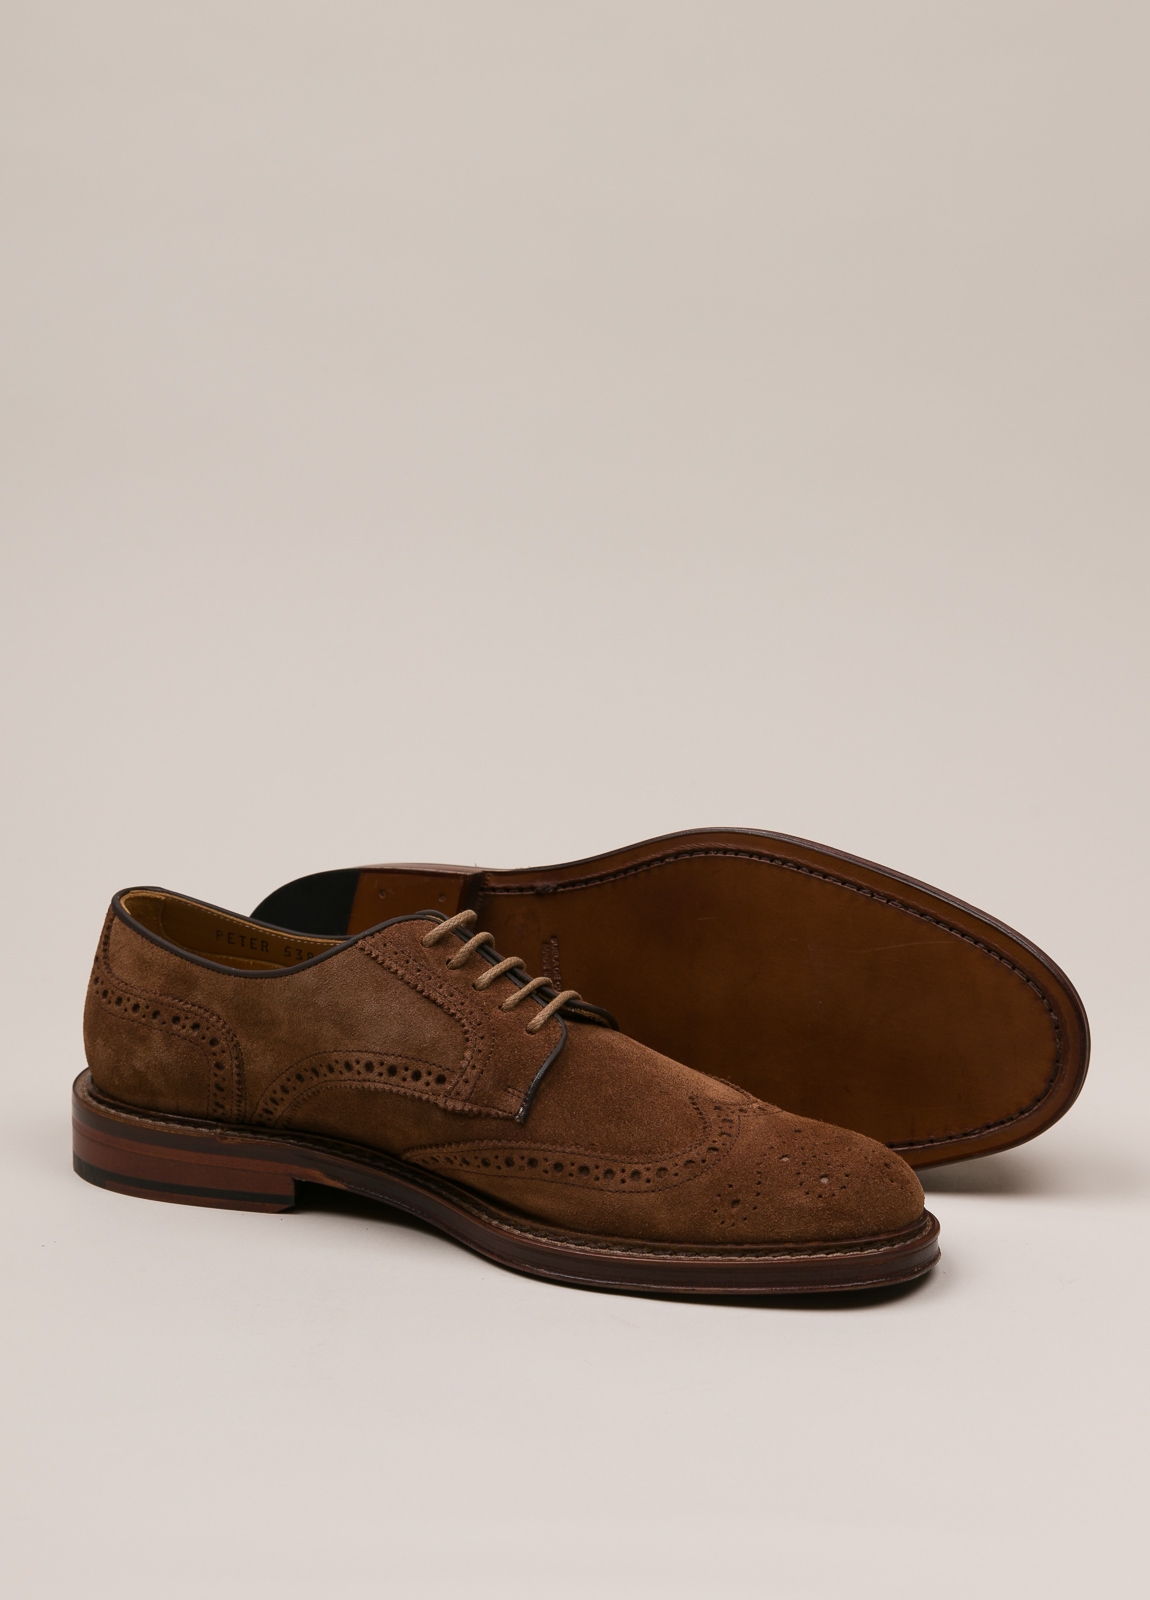 Zapato sport wear furest colección marrón - Ítem3